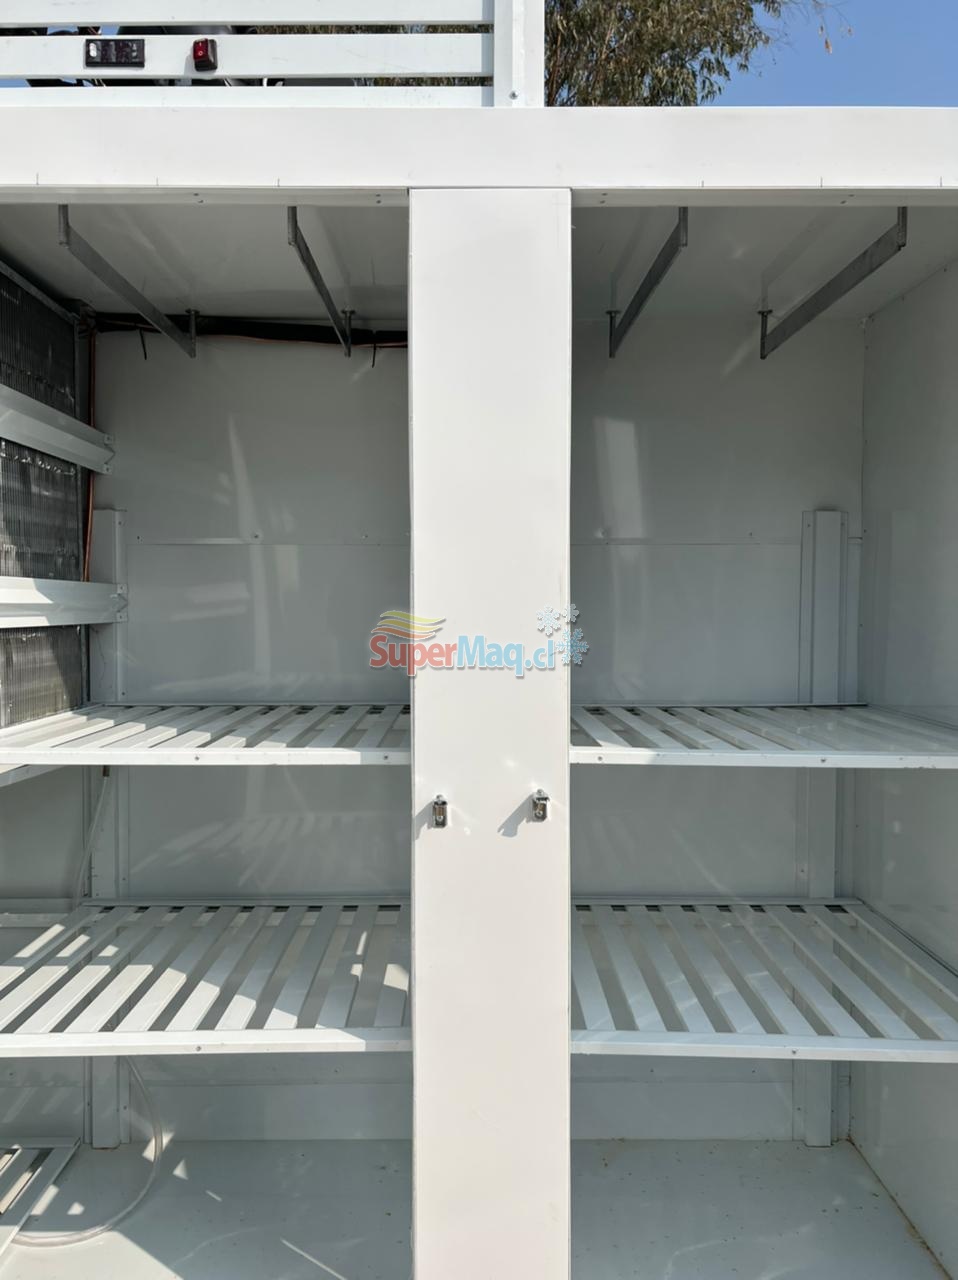 Refrigerador Carnicero 2 puertas 2.00 Mt : Refrigeracion